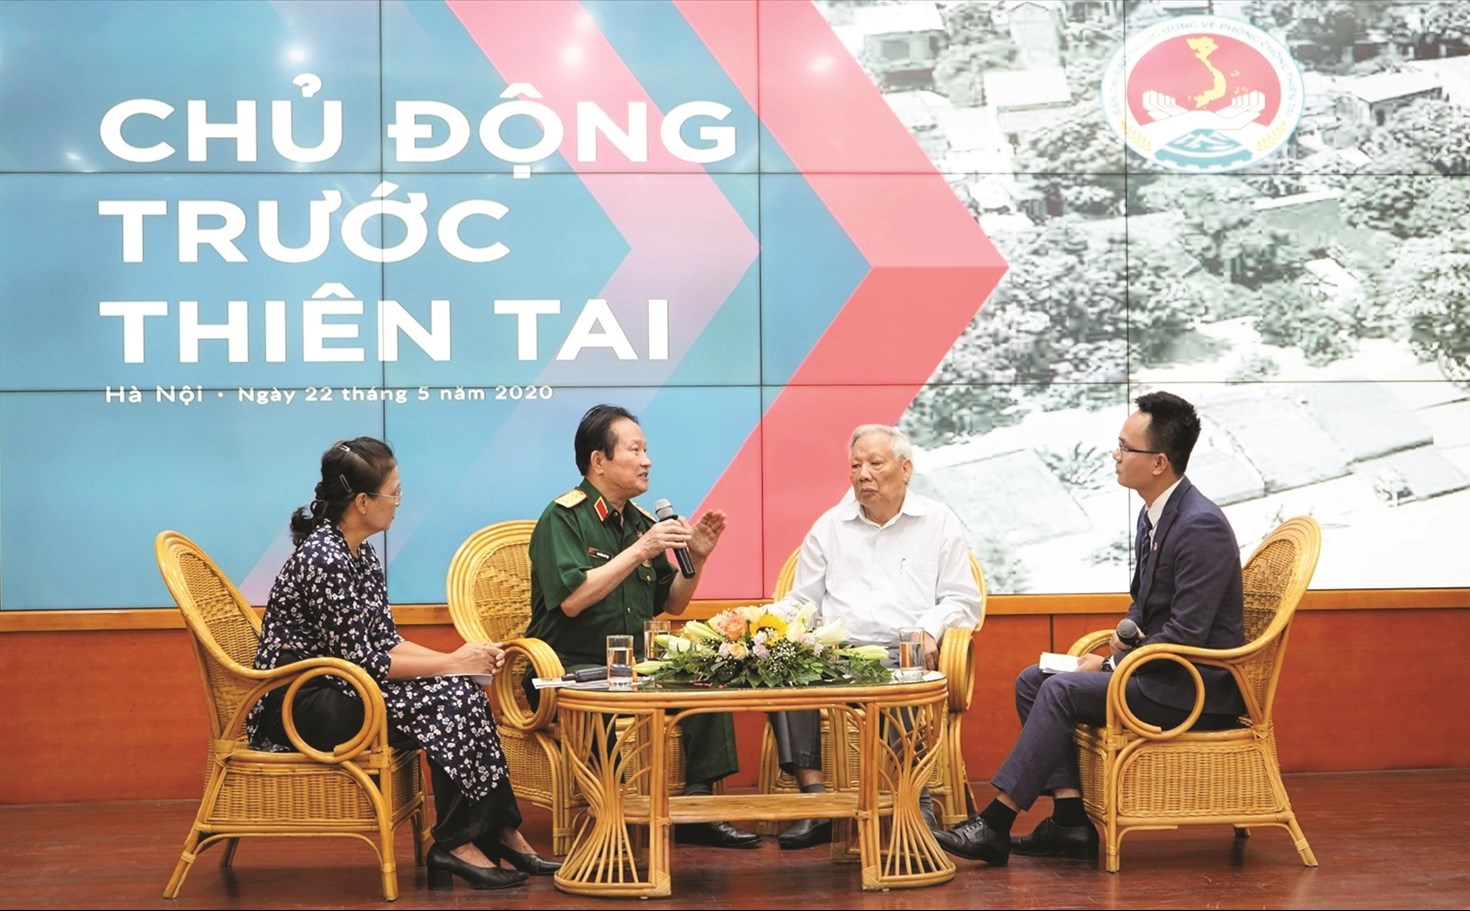 Ông Lê Huy Ngọ (áo trắng) tại buổi tọa đàm với chủ đề “Chủ động trước thiên tai” trong khuôn khổ Lễ kỷ niệm 74 năm Ngày PCTT Việt Nam (22/5/1946 - 22/5/2020).